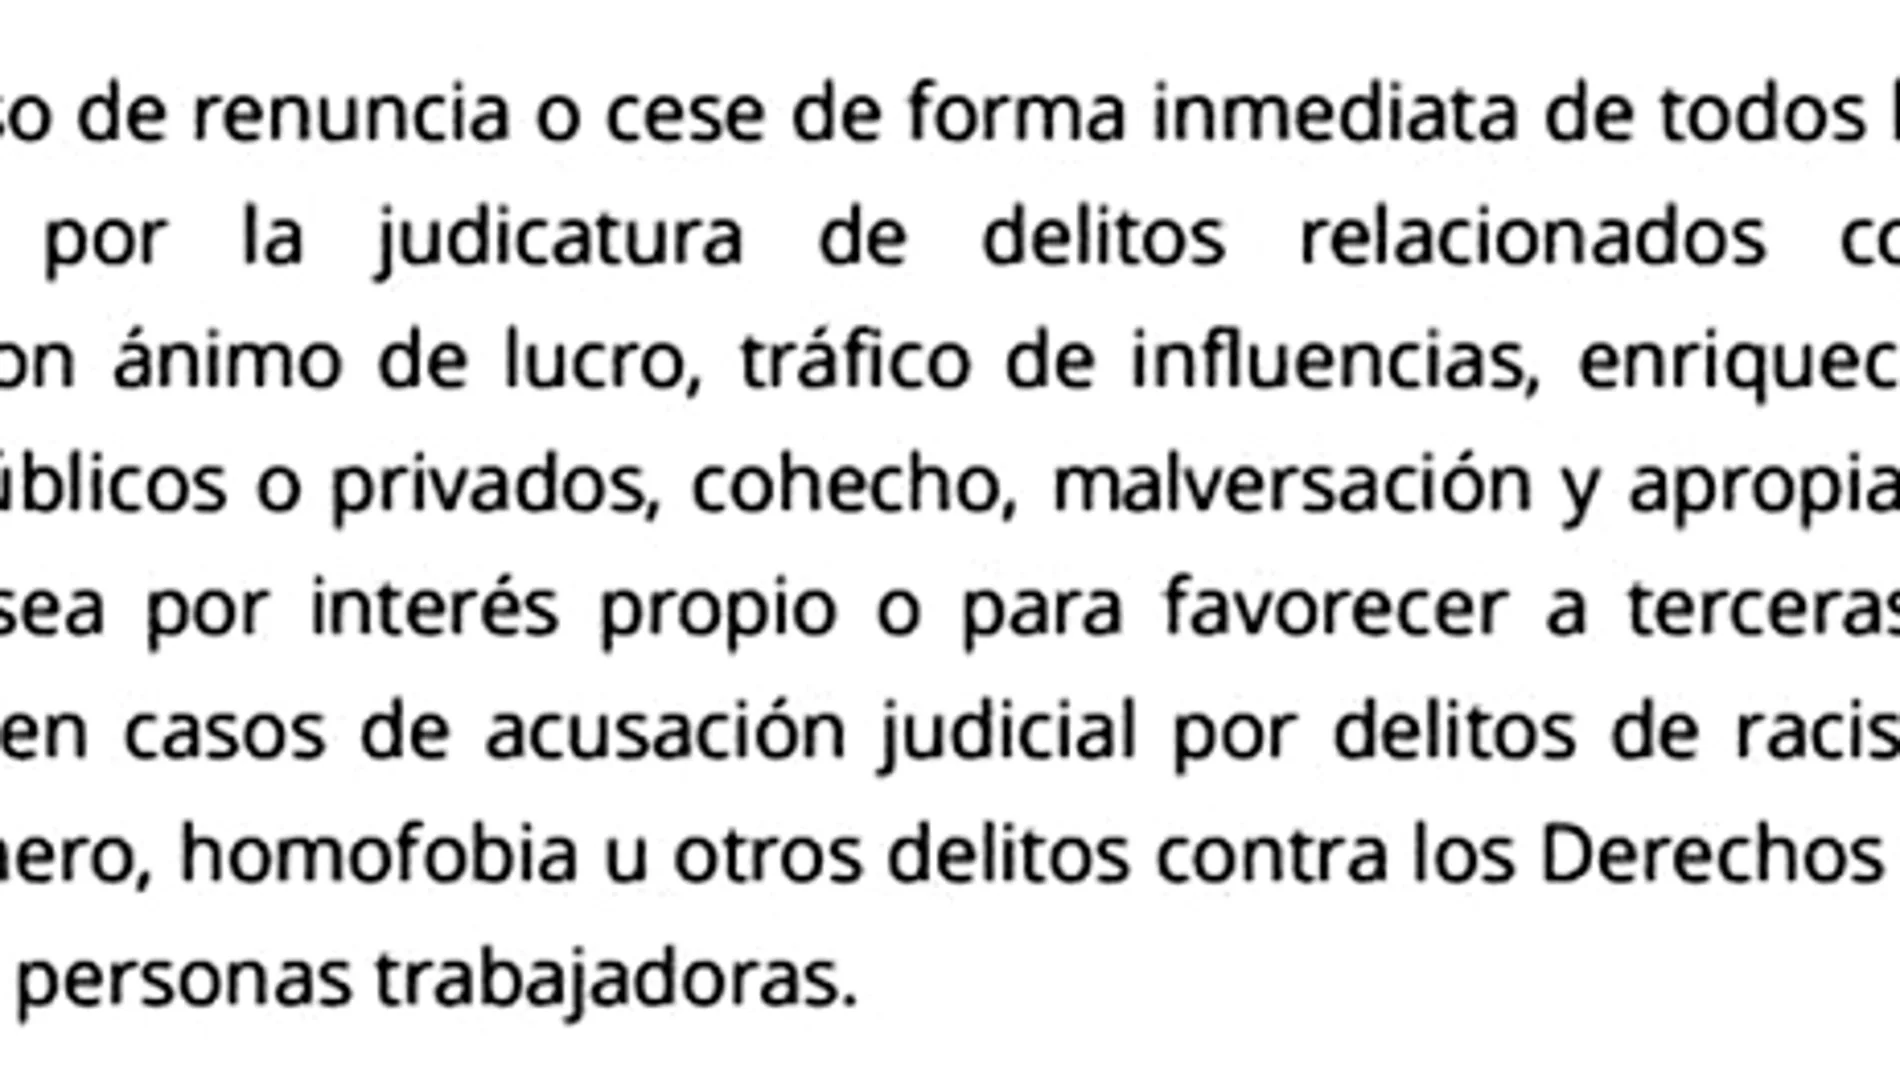 El artículo 1.4 del código ético de Ahora Madrid, que fue suscrito en 2015 por sus ediles